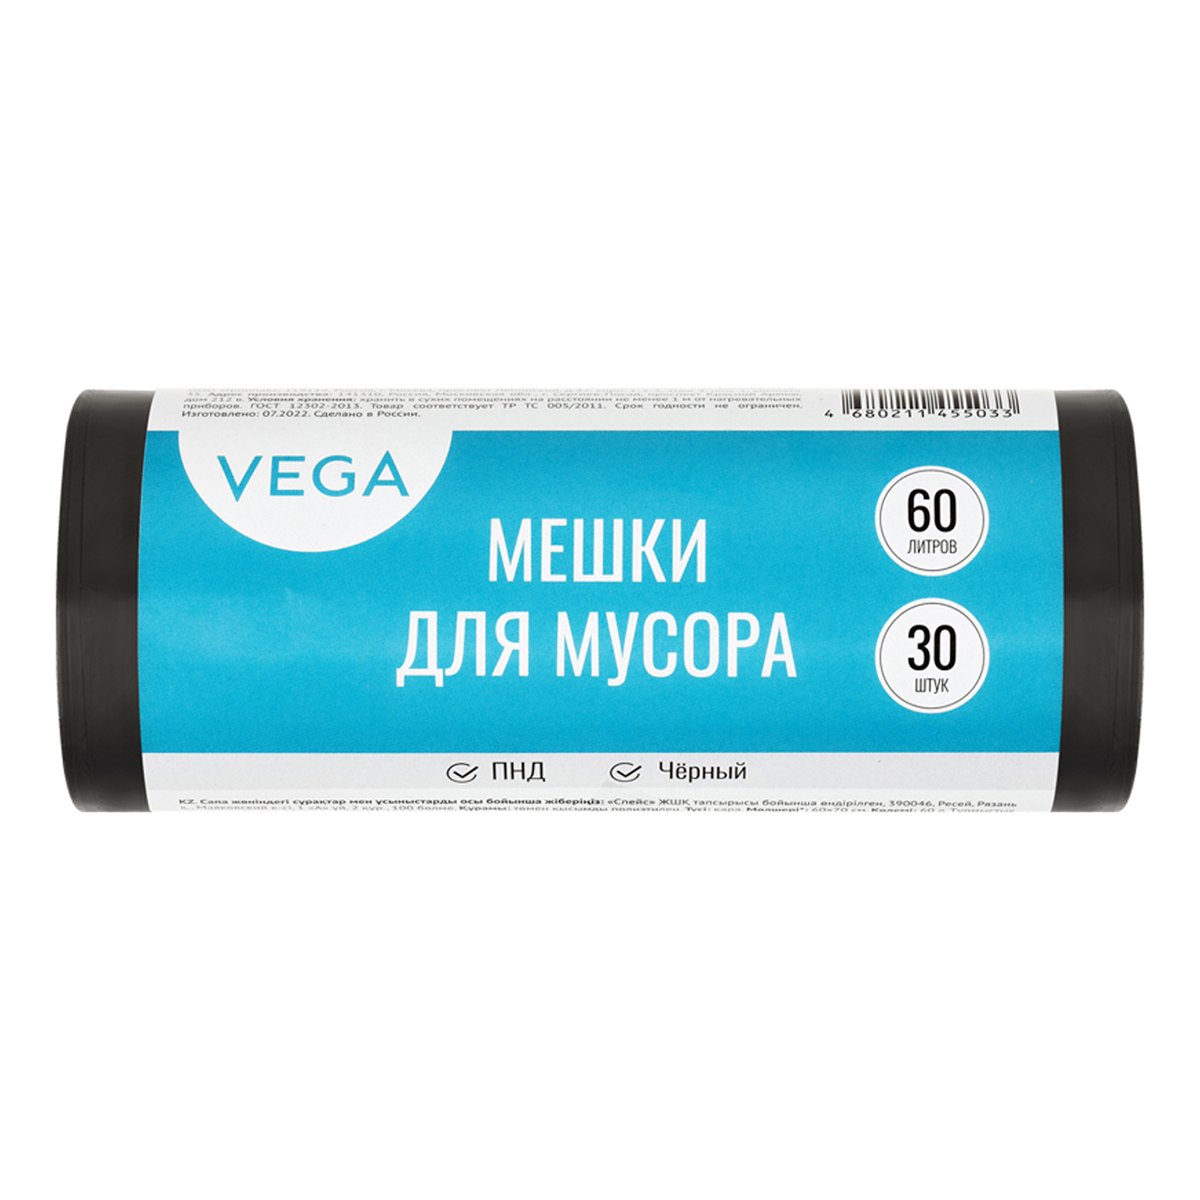       60 Vega , 60*70, 8, 30., ,   (344026)